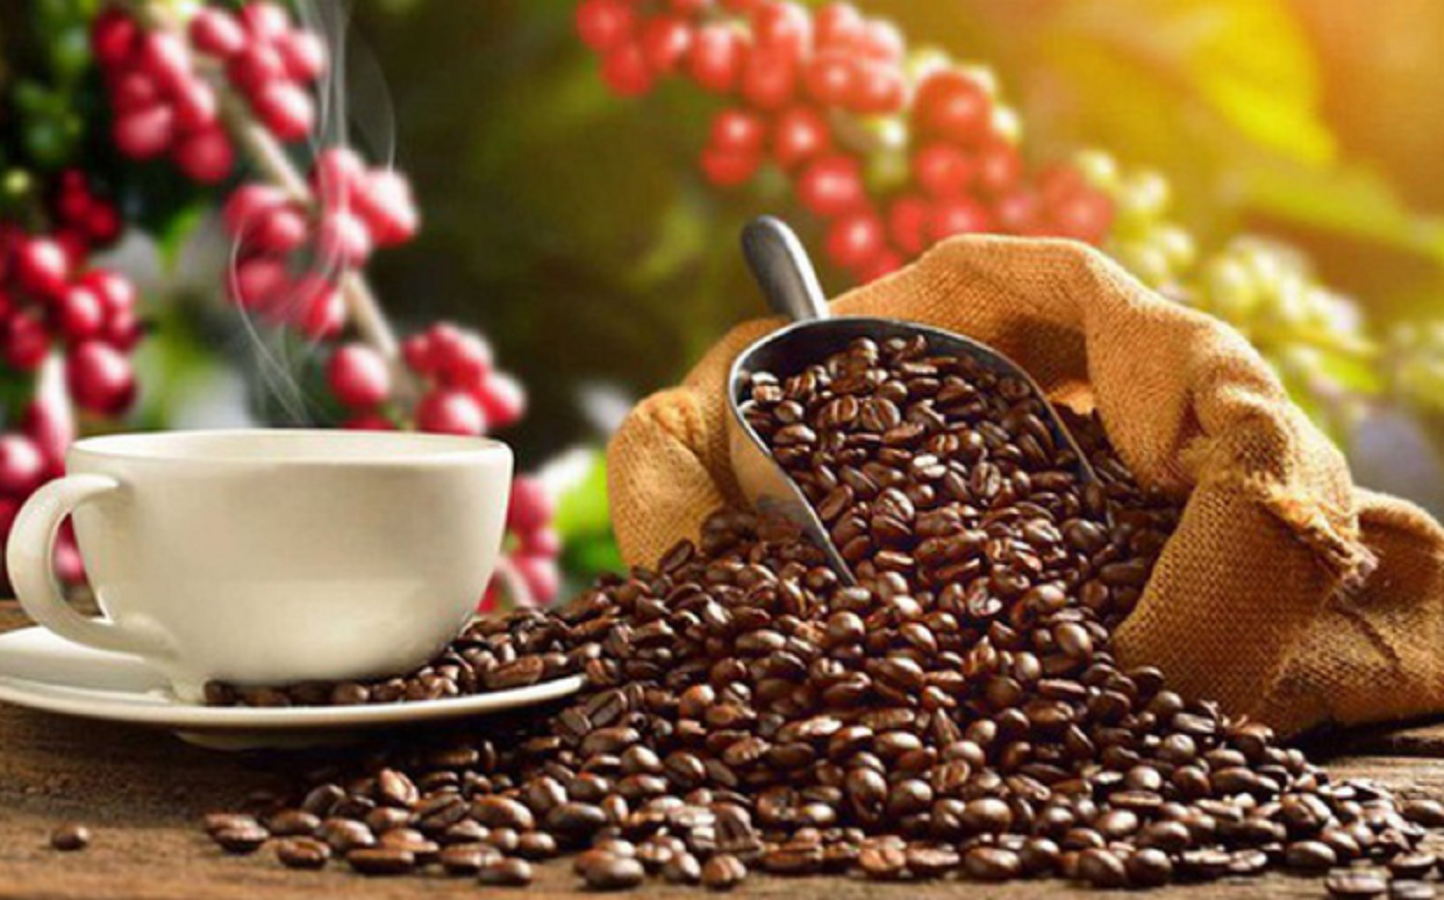 Trong 6 tháng, cà phê tuy giảm về khối lượng (đạt 1,02 triệu tấn, giảm 2,2%), nhưng nhờ giá xuất khẩu bình quân tăng 5,2% nên giá trị xuất khẩu đạt 2,4 tỷ USD, tăng 3% so với nửa đầu năm 2022.